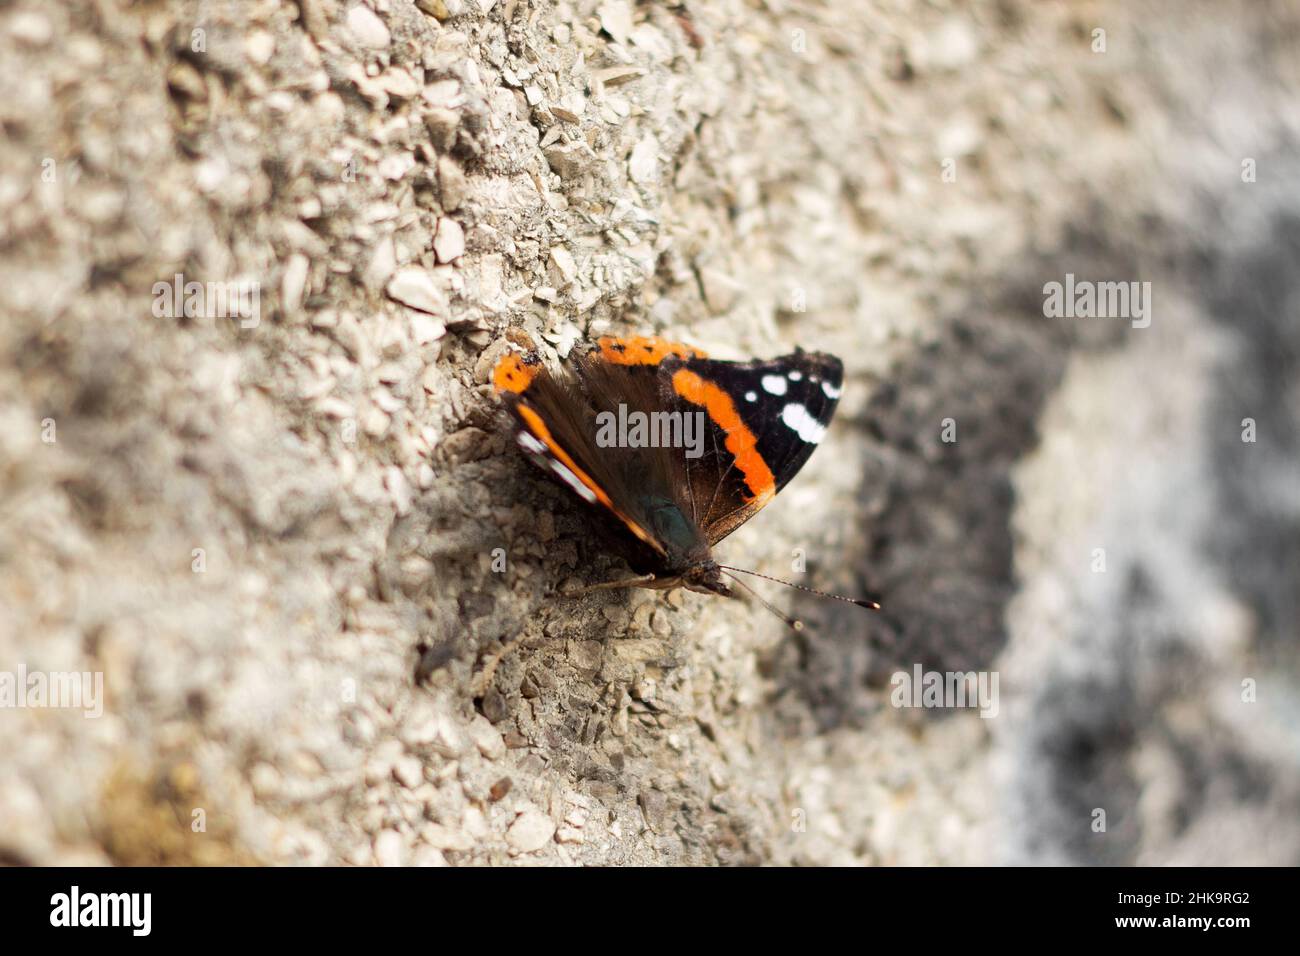 Grande bella farfalla, insetto nero con macchie bianche arancioni su una parete grigia Foto Stock